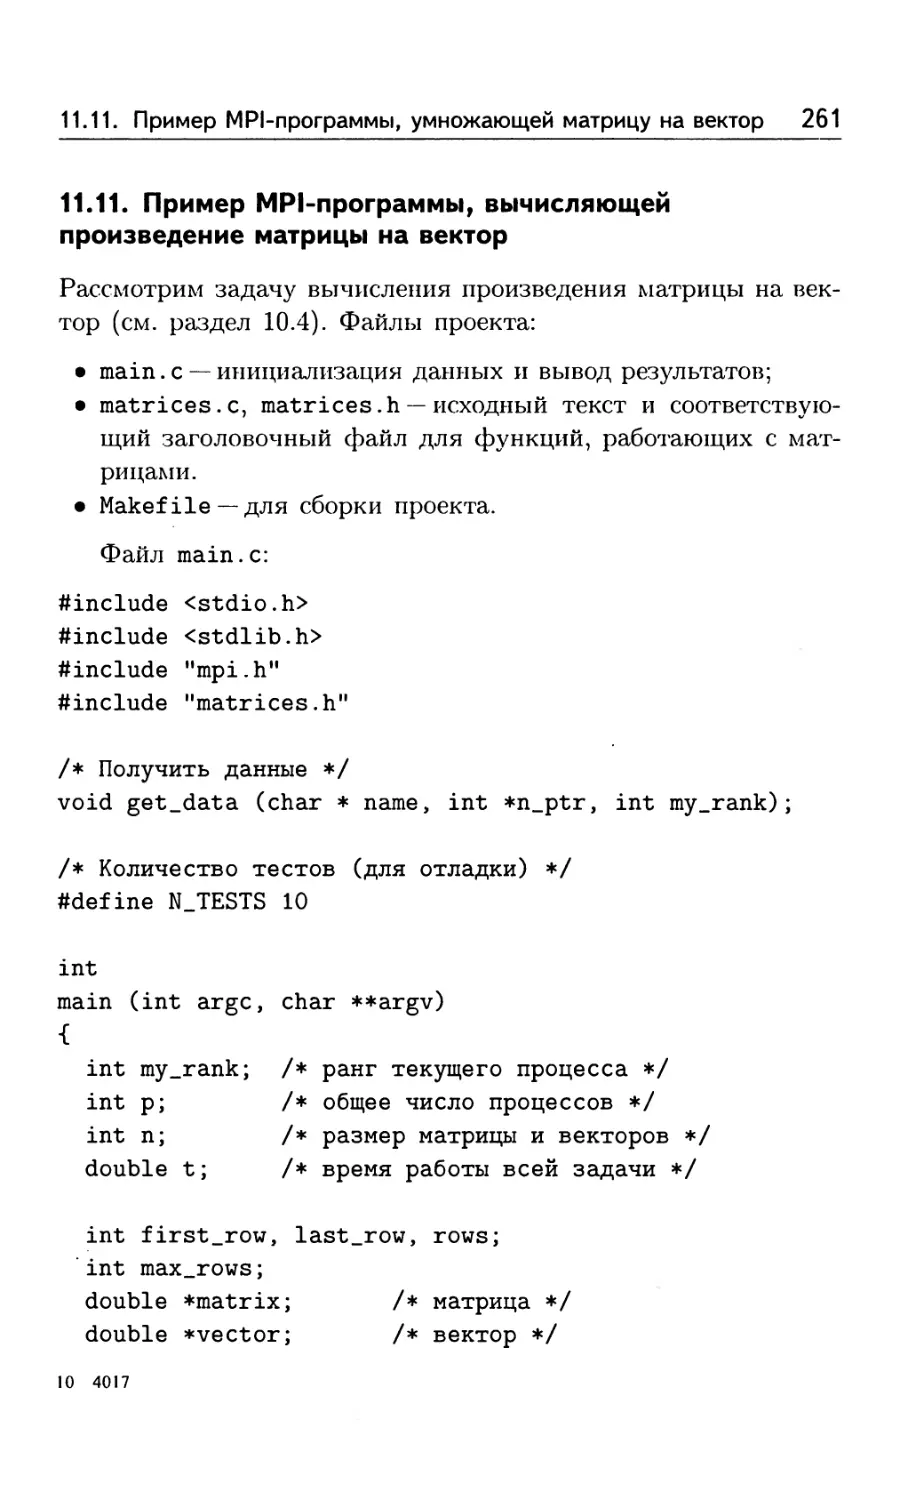 11.11. Пример MPI-программы, вычисляющей произведение матрицы на вектор